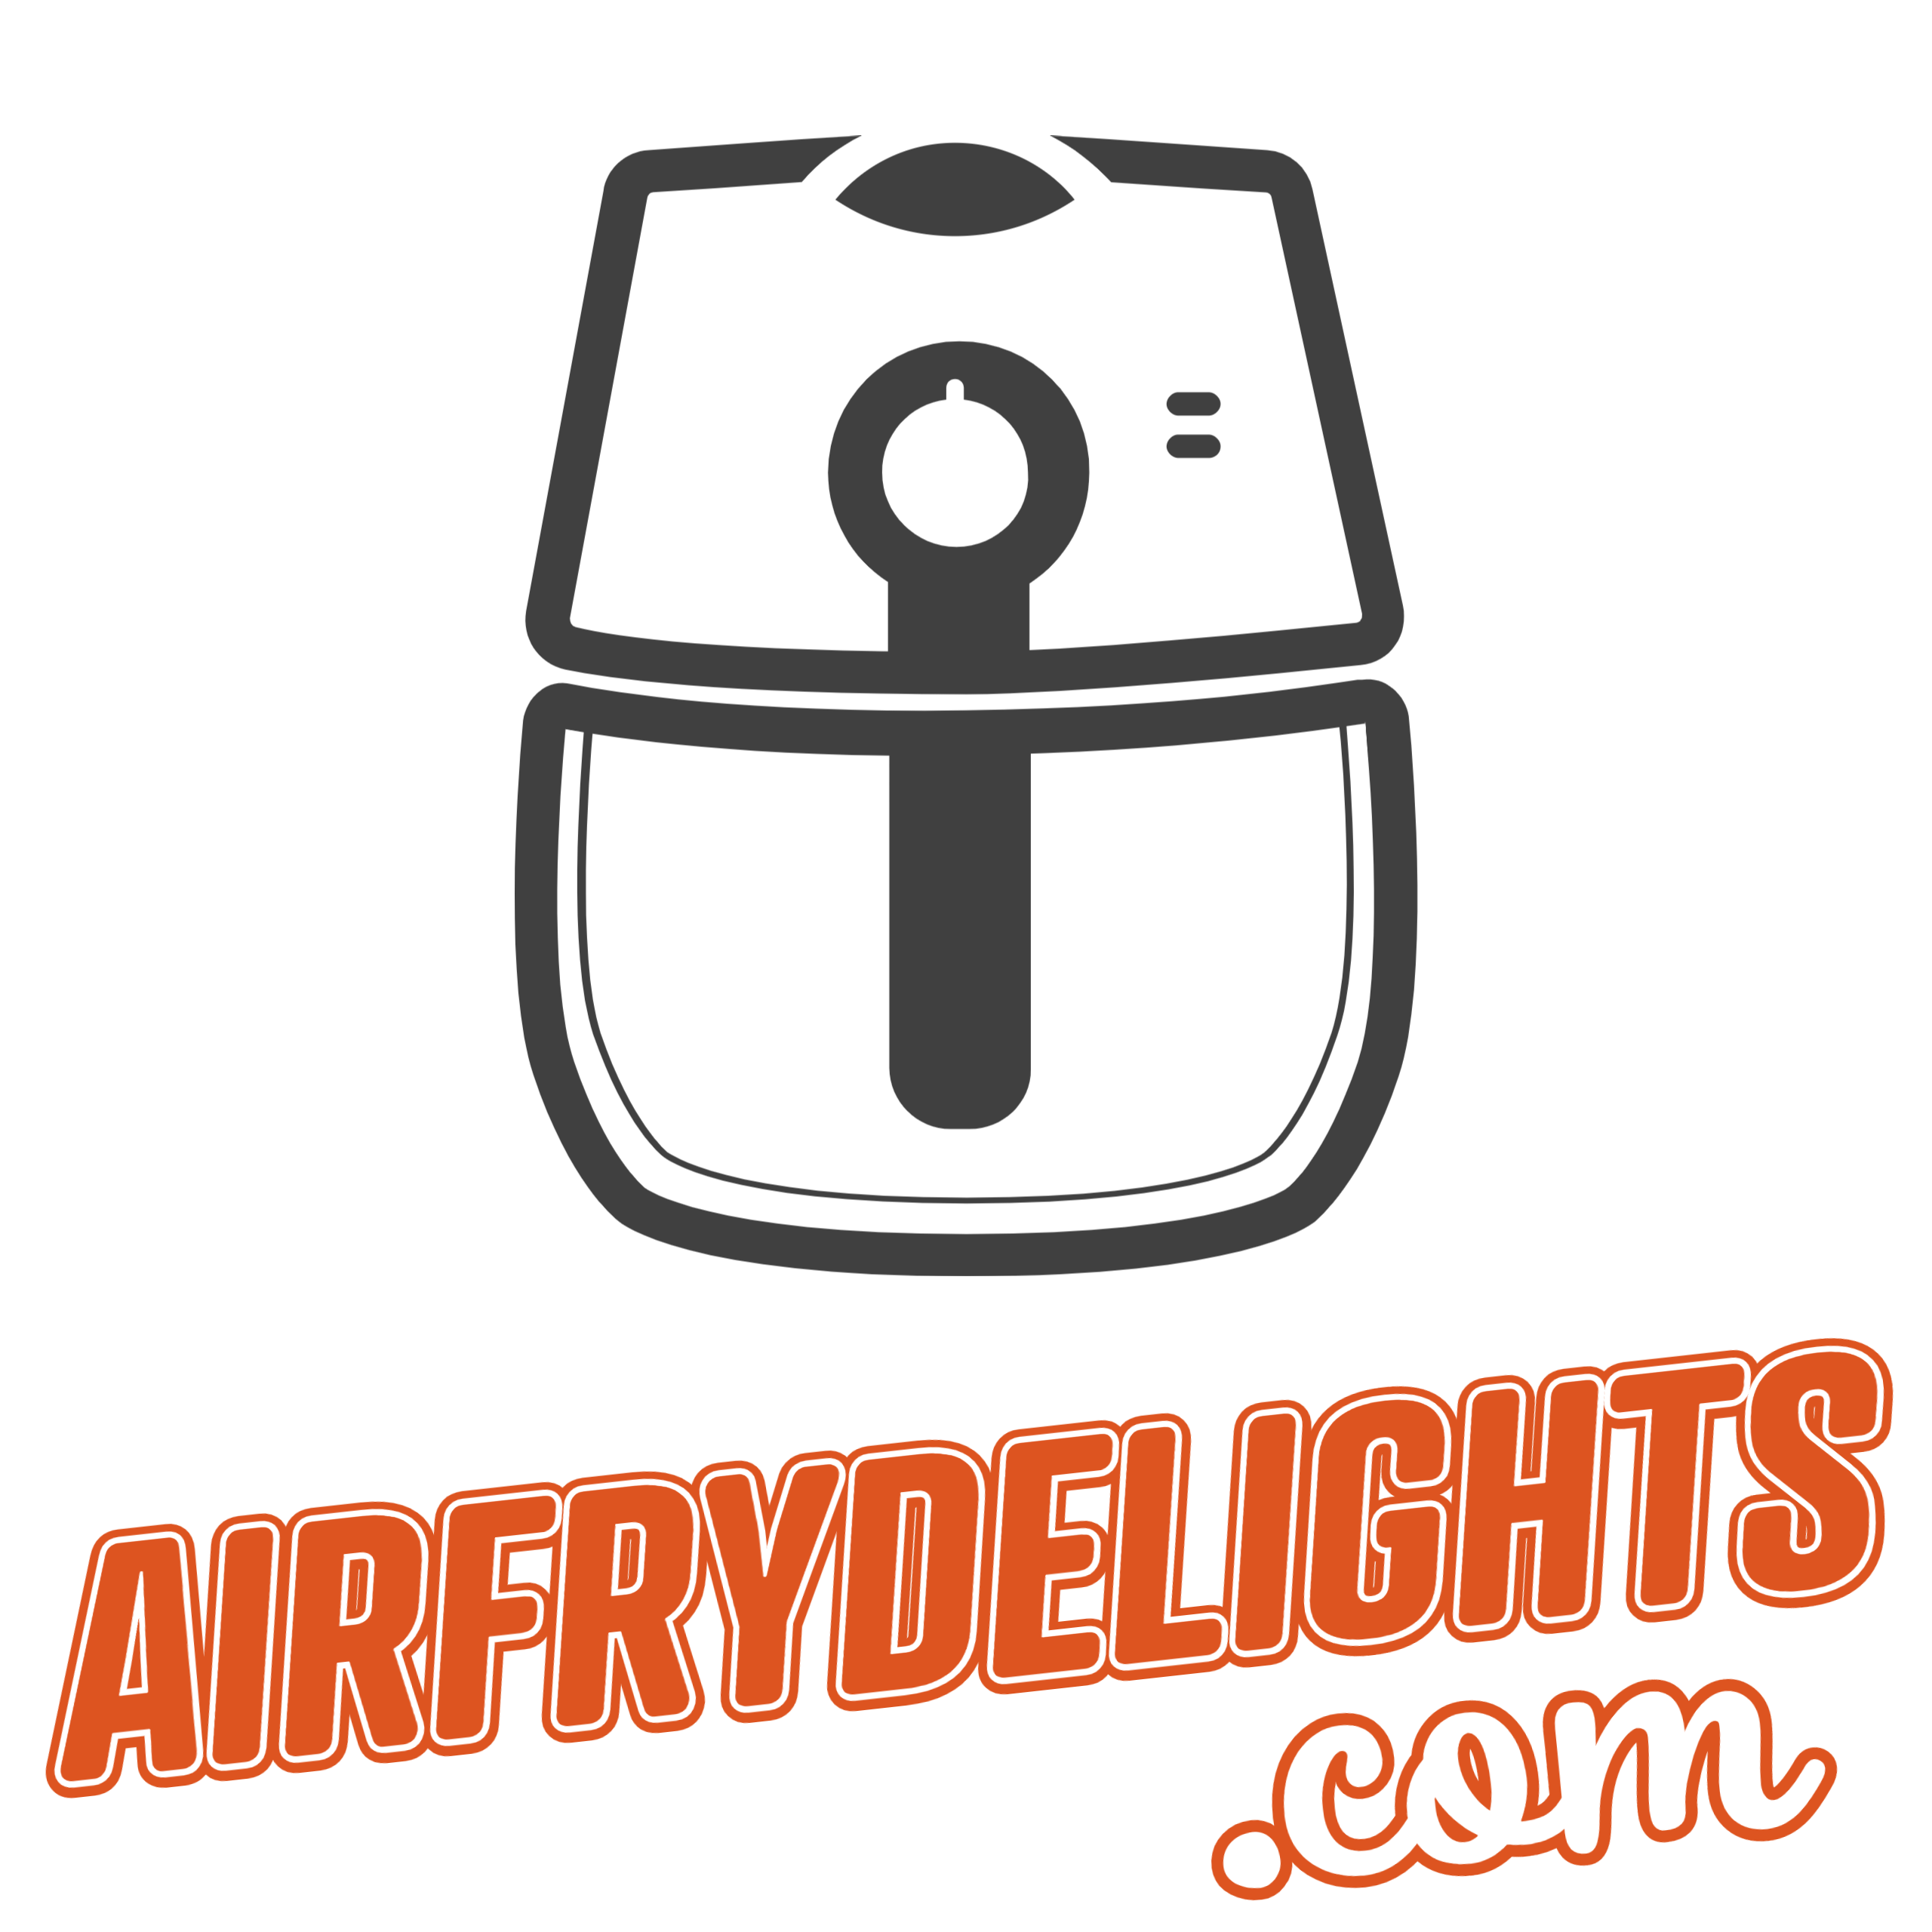 airfrydelights logo